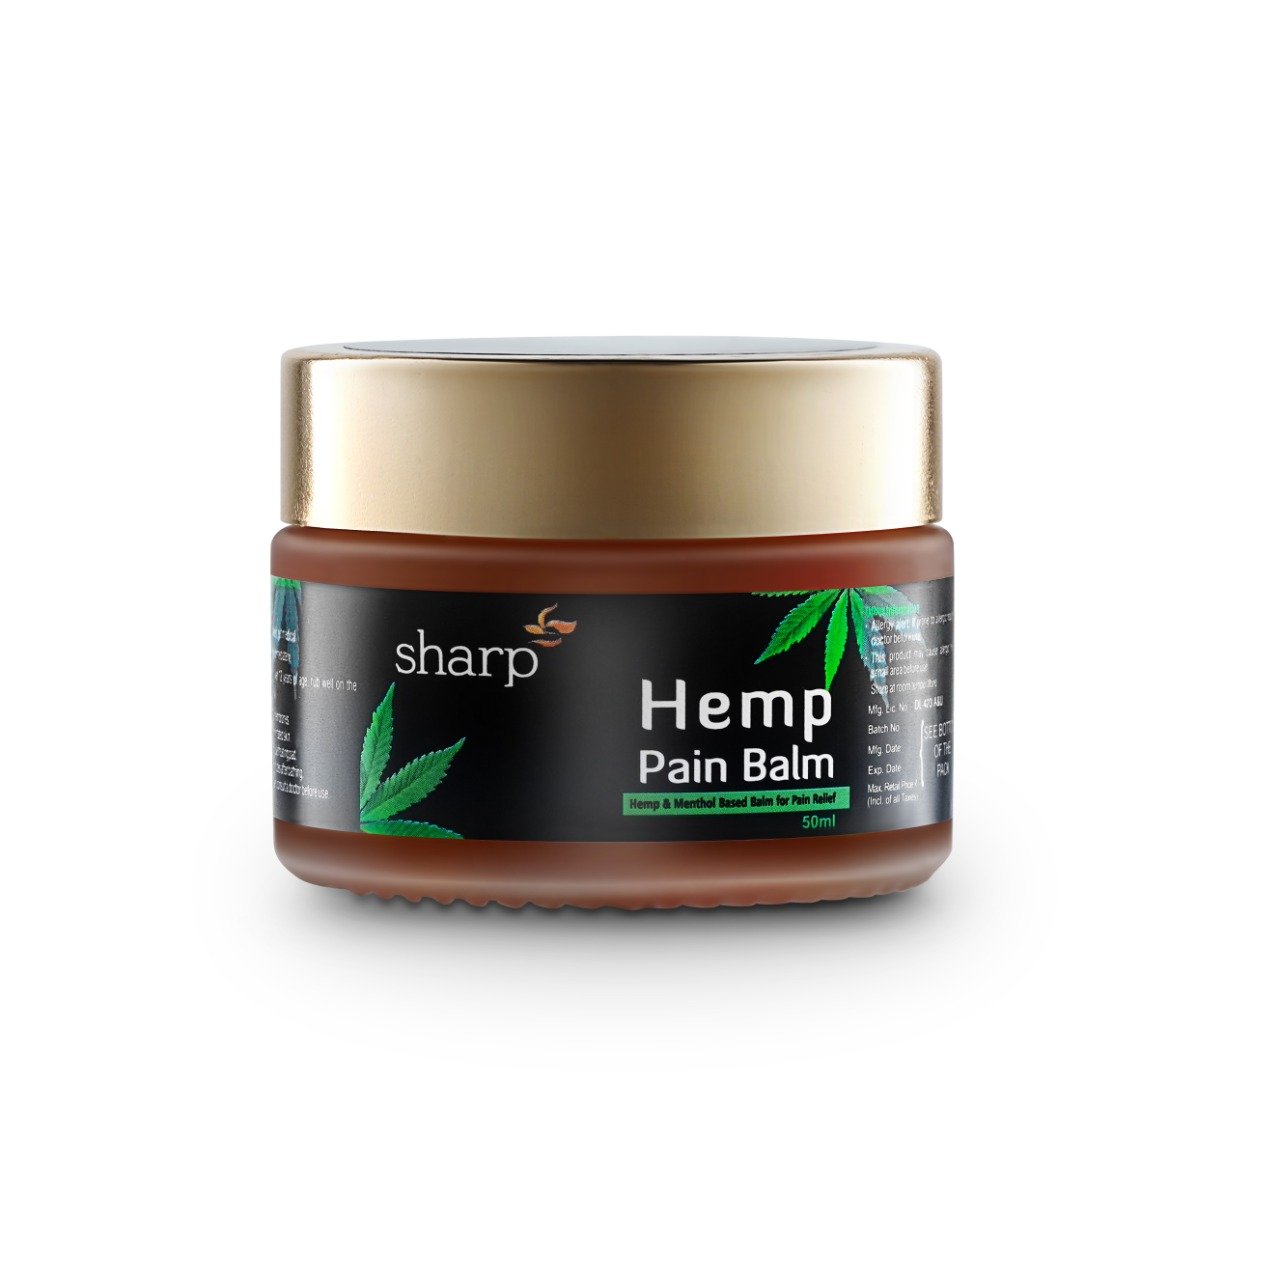 Sharp Hemp Pain Balm | Menthol & Hemp Based | 50ml